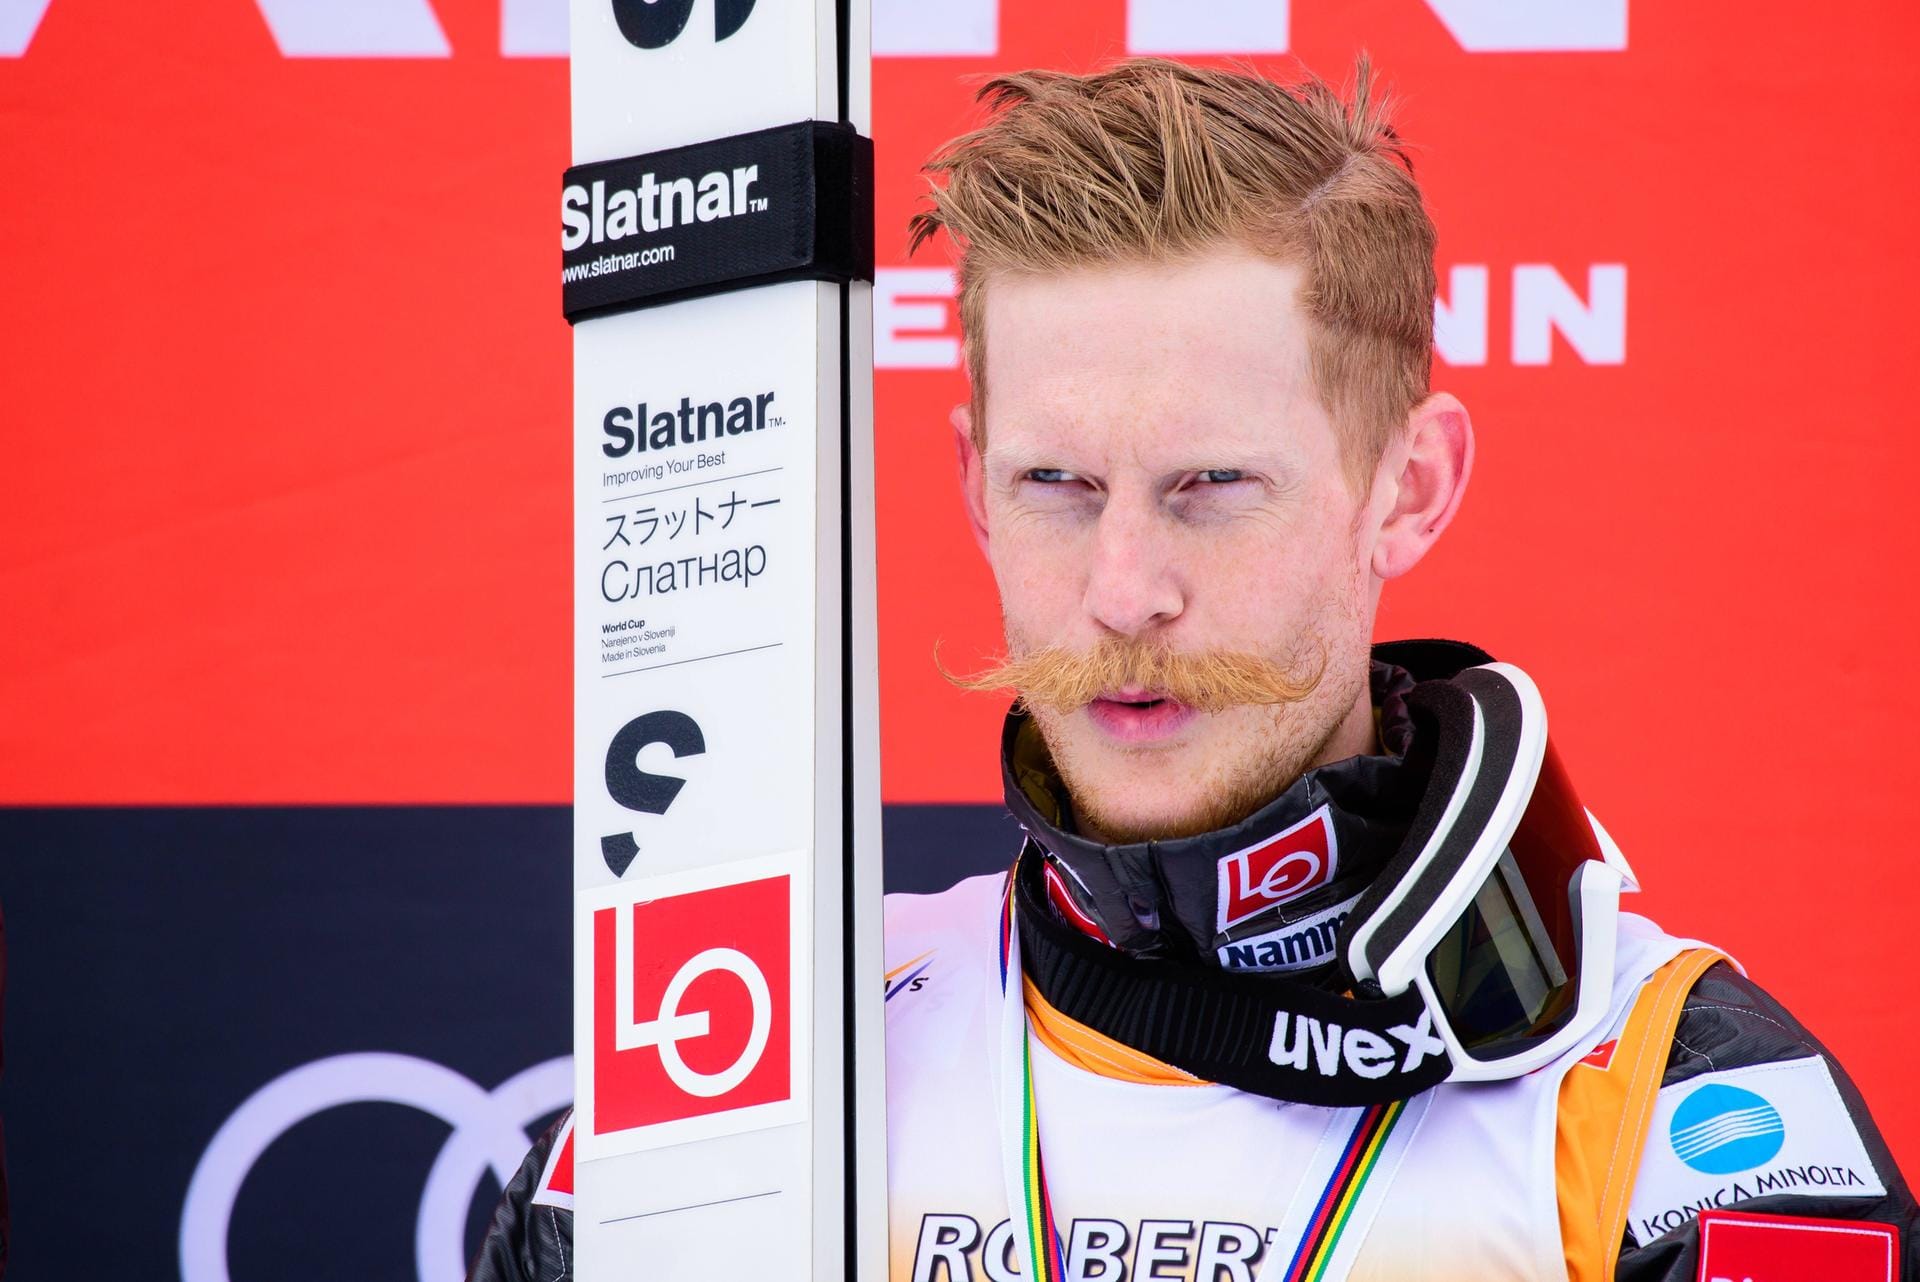 Robert Johansson aus Norwegen wurde Fünfter im Gesamtweltcup, Olympiasieger mit dem norwegischen Team, Skiflug-Weltmeister im Team und holte zudem zwei Bronzemedaillen bei Olympia. Auch in dieser Saison ist mit dem Norweger zu rechnen.